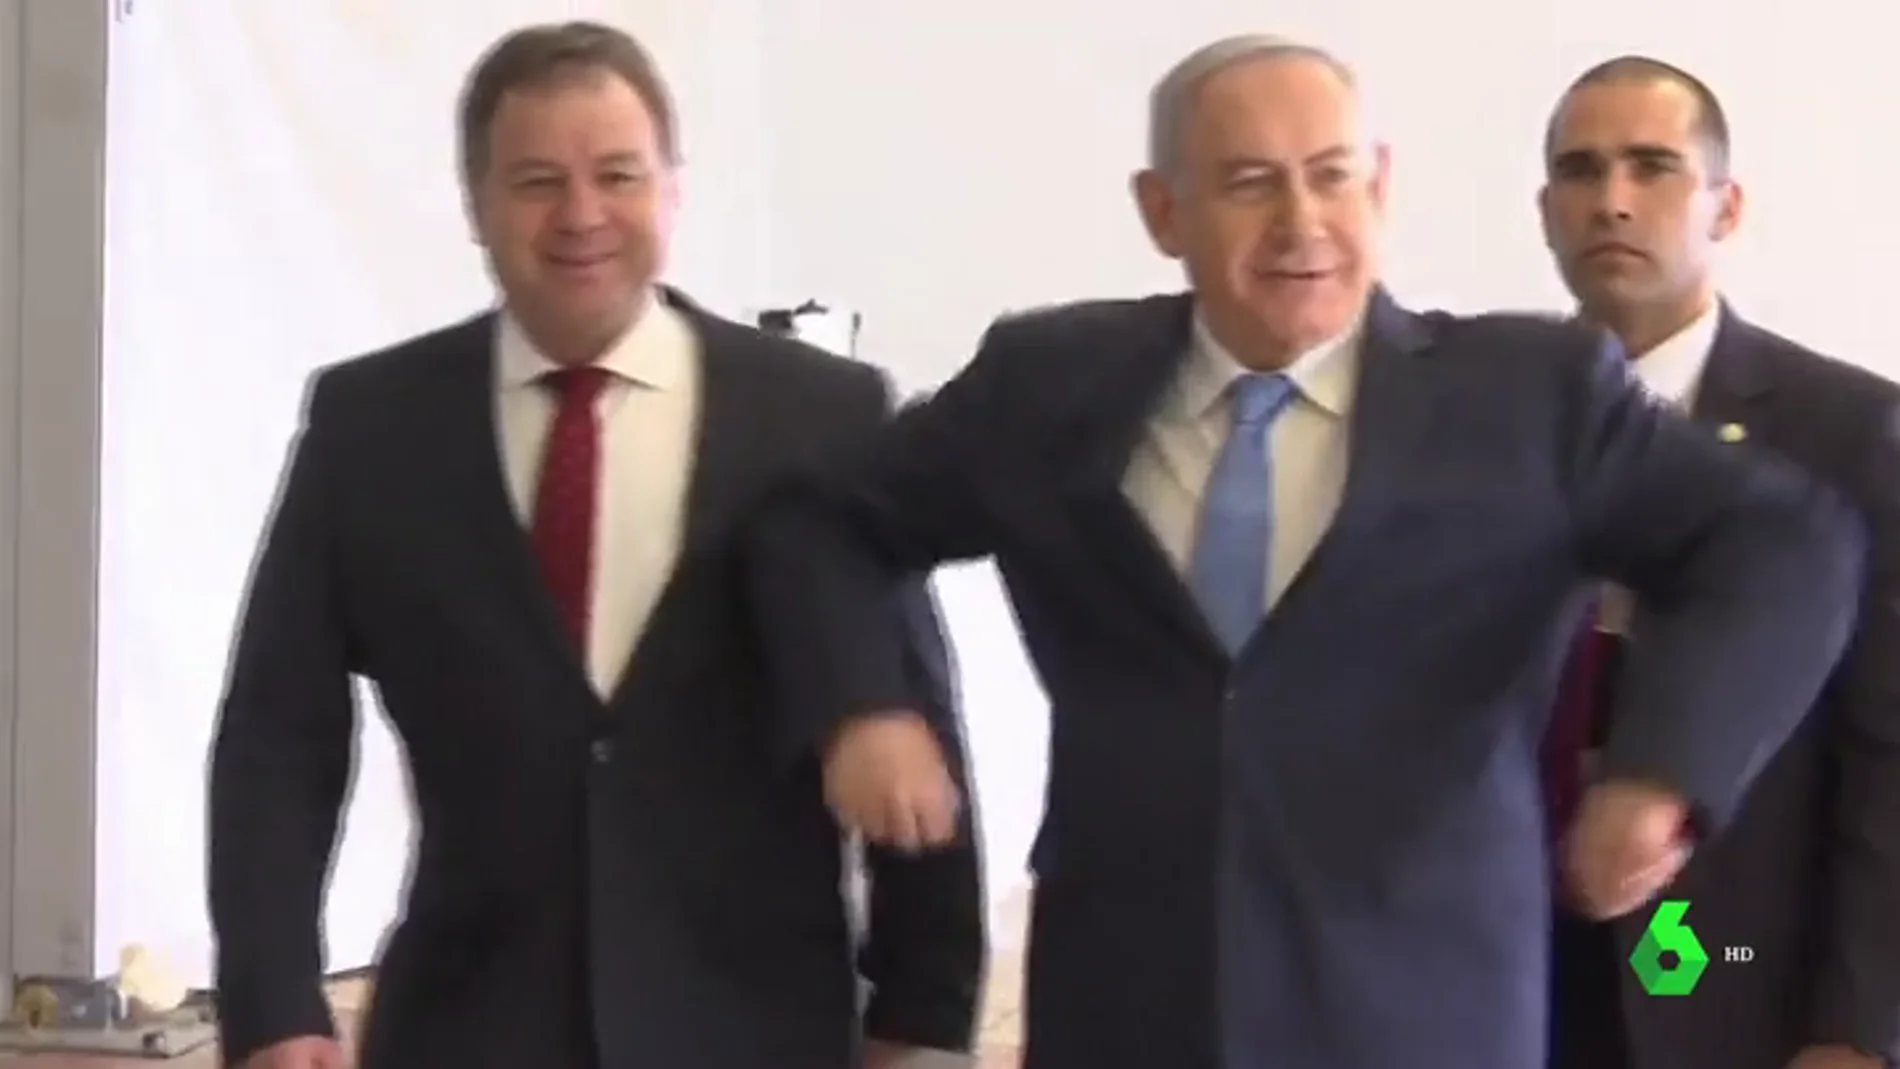  El primer ministro Israelí se apunta al baile de Netta